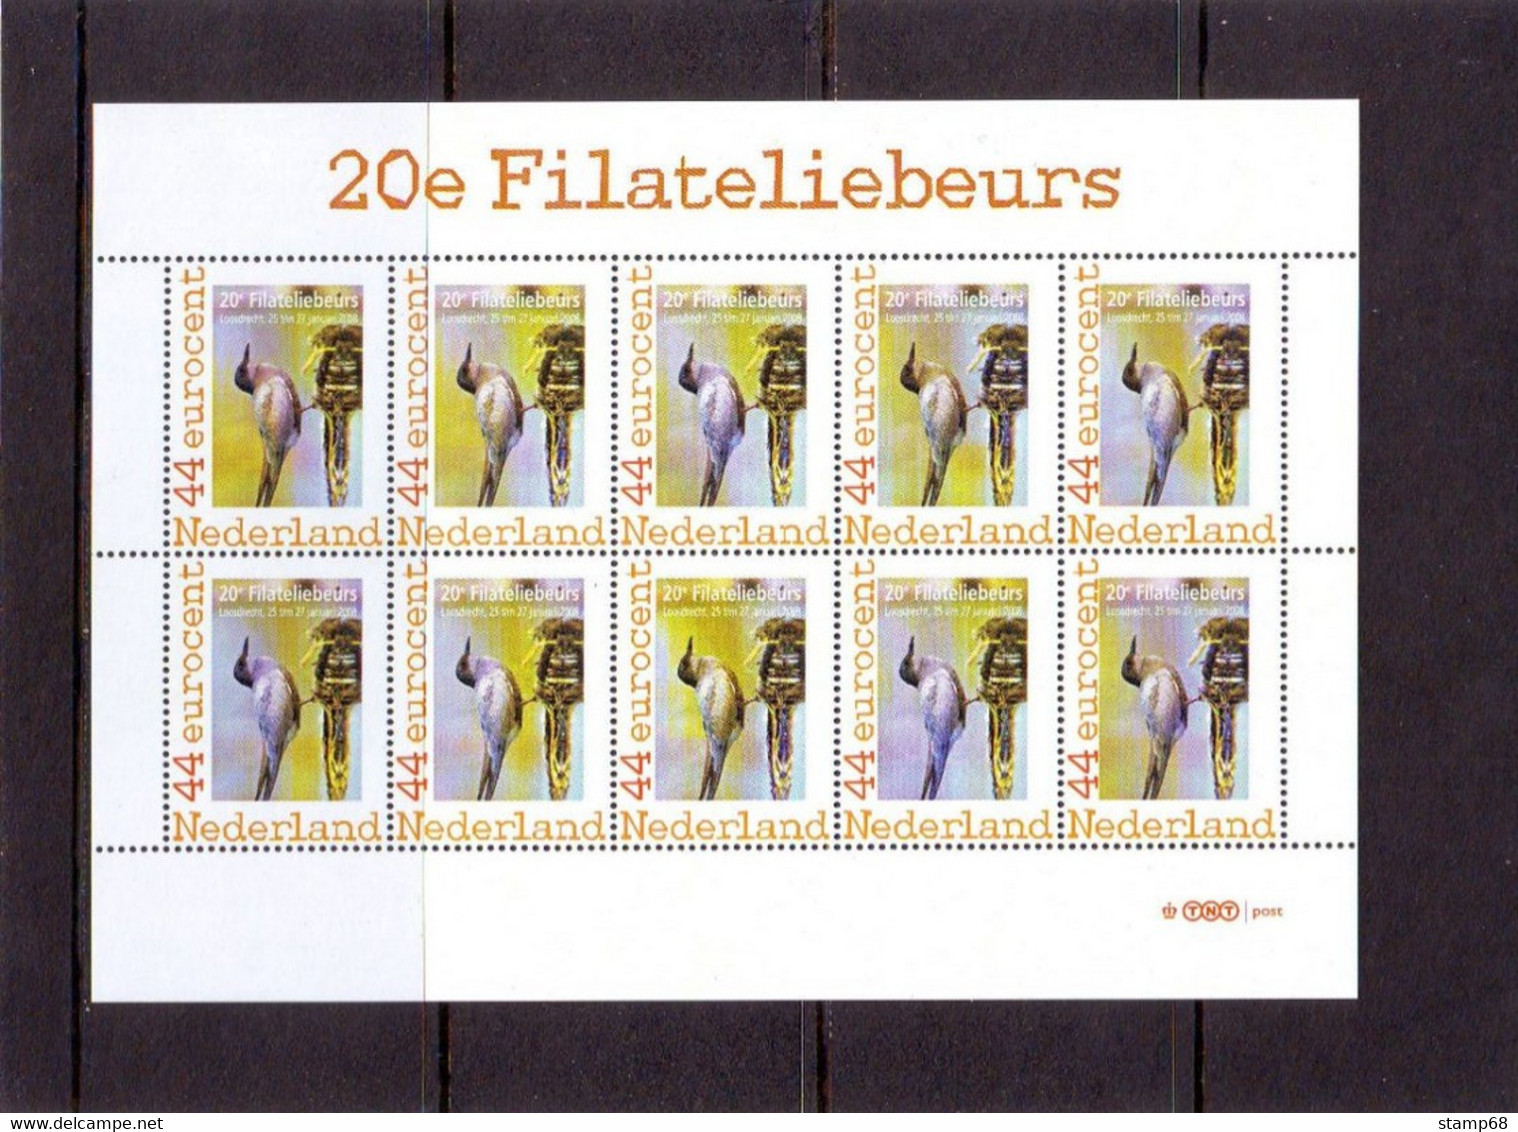 Nederland NVPH 2562C1 Vel Persoonlijke Zegels 20e Filateliebeurs Loosdrecht 2008 MNH Postfris - Personalisierte Briefmarken